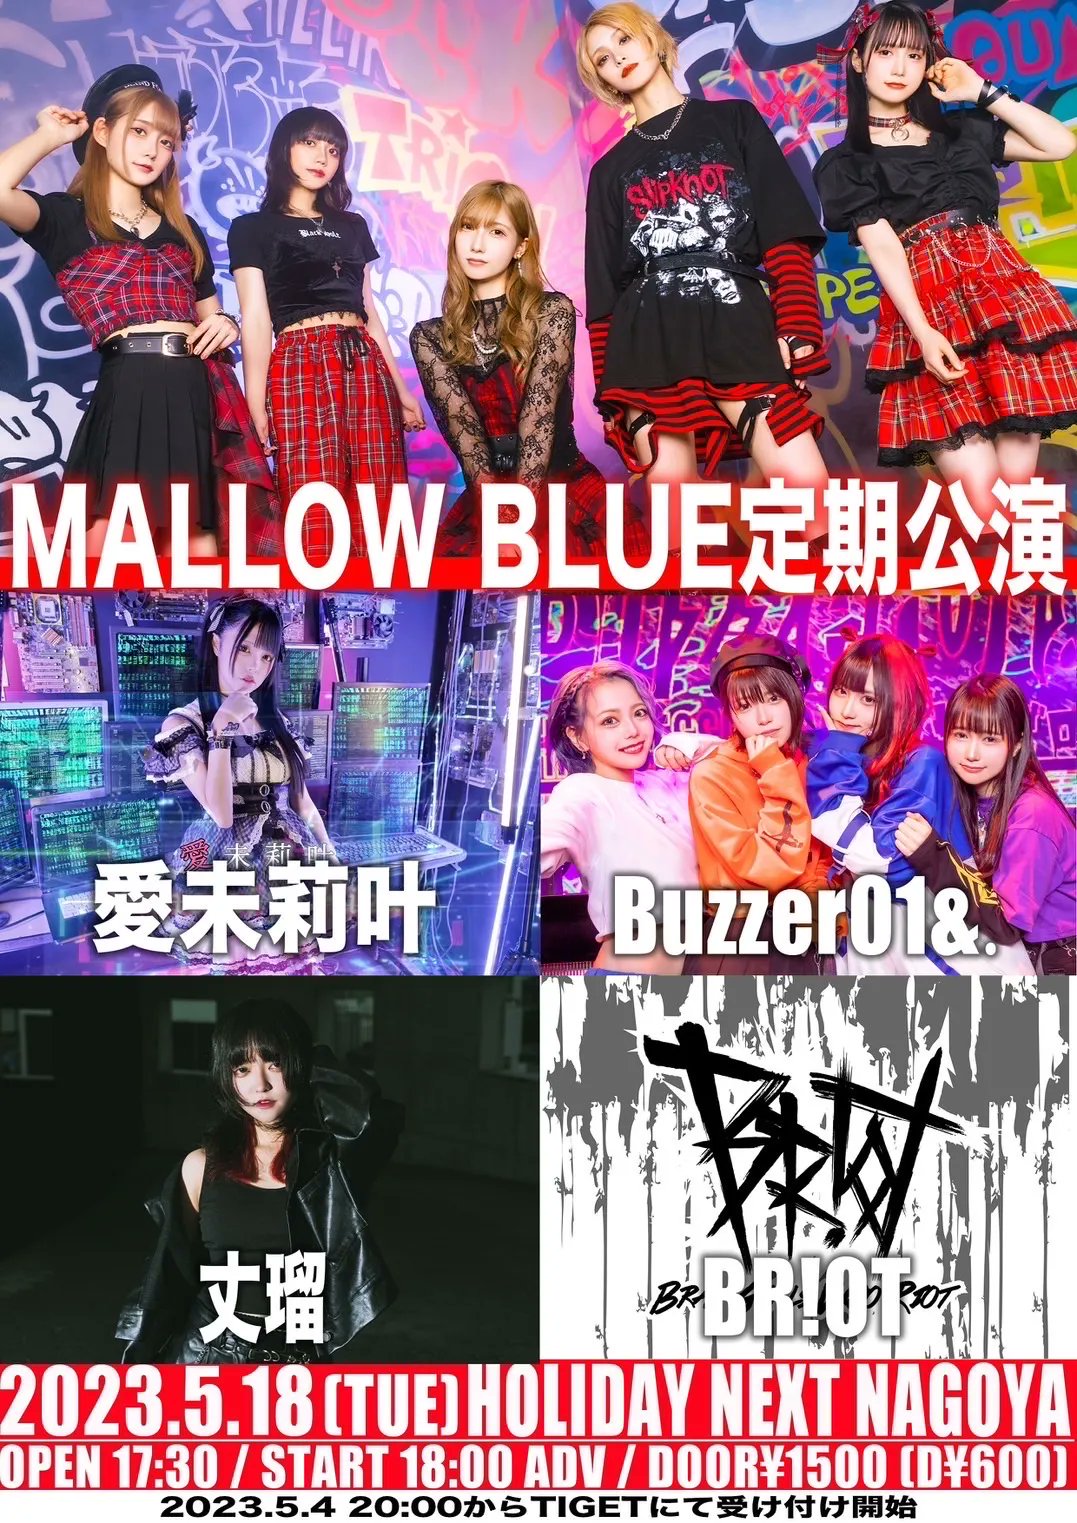 星井あおサポート出演公演(MALLOW BLUE ＆ Buzzer01&.)「MALLOW BLUE定期イベント」